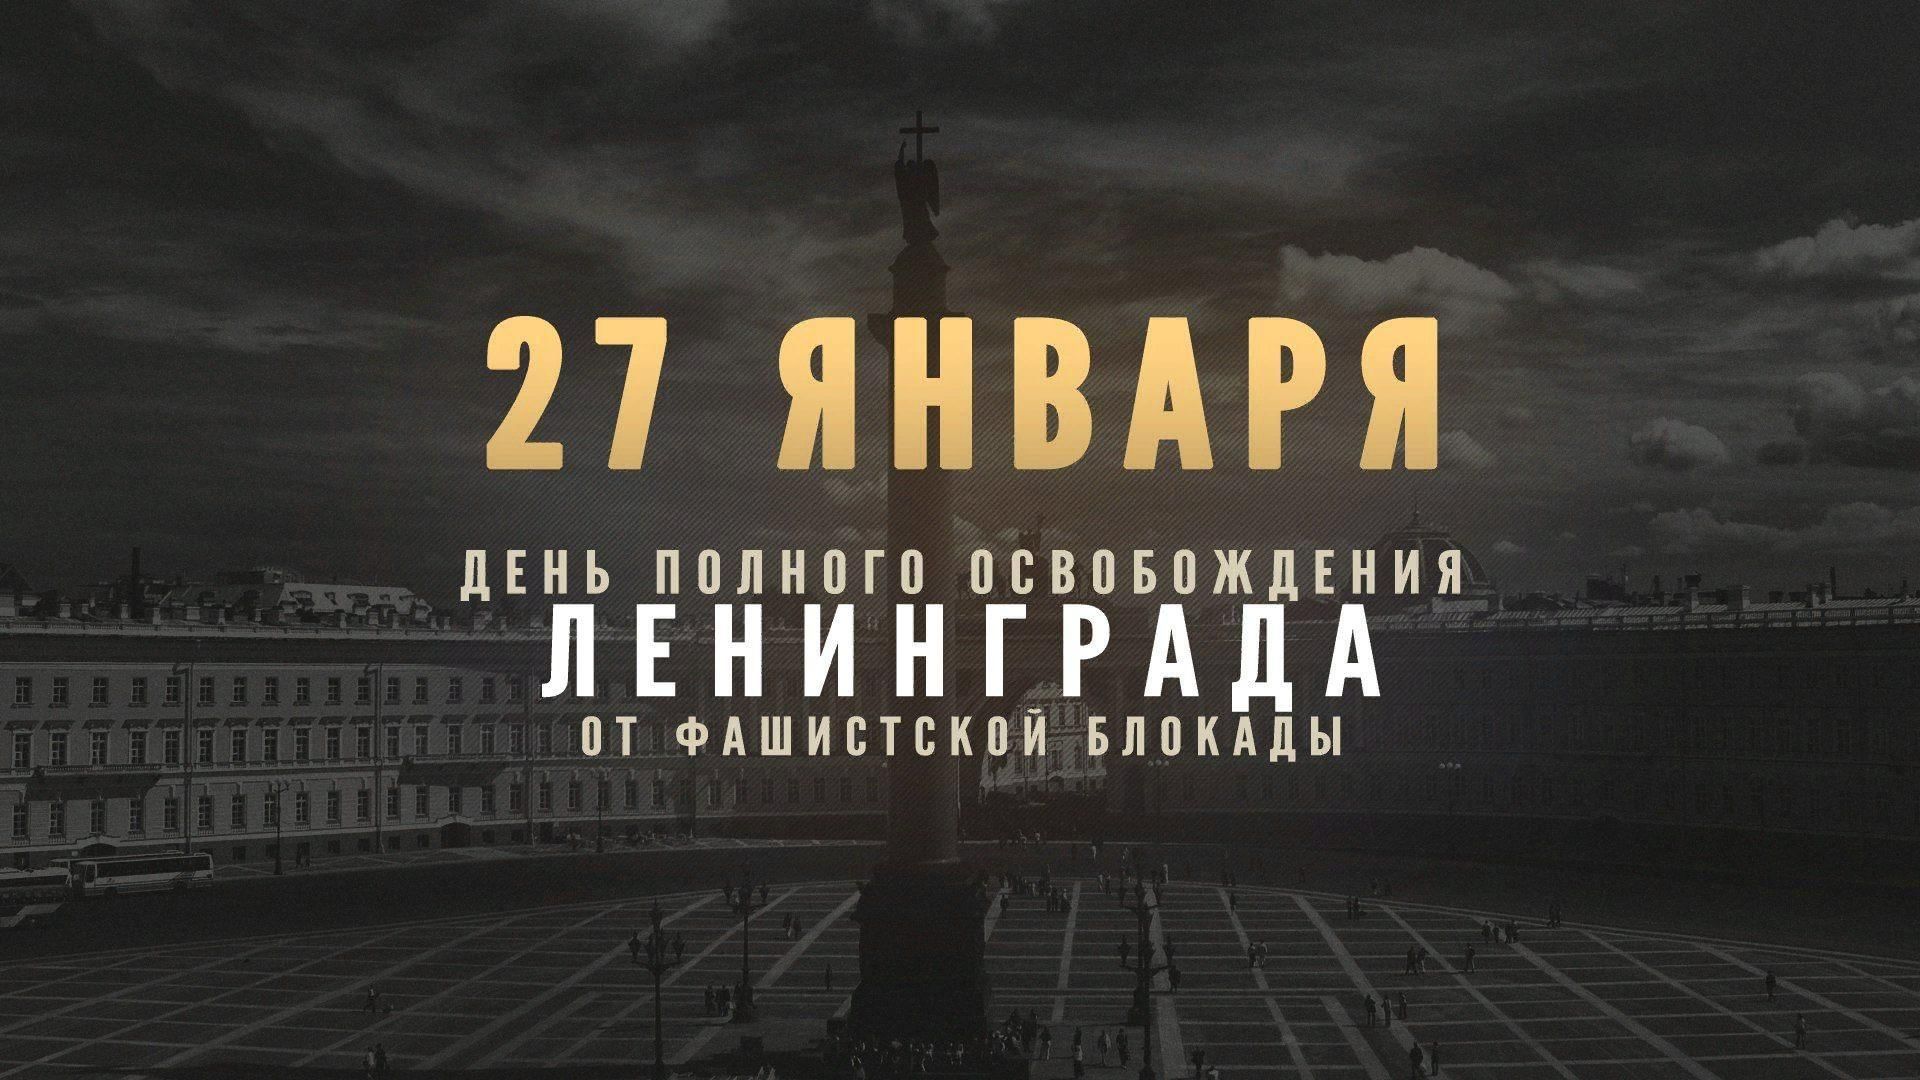 27 Января день снятия блокады города Ленинграда 1944 год